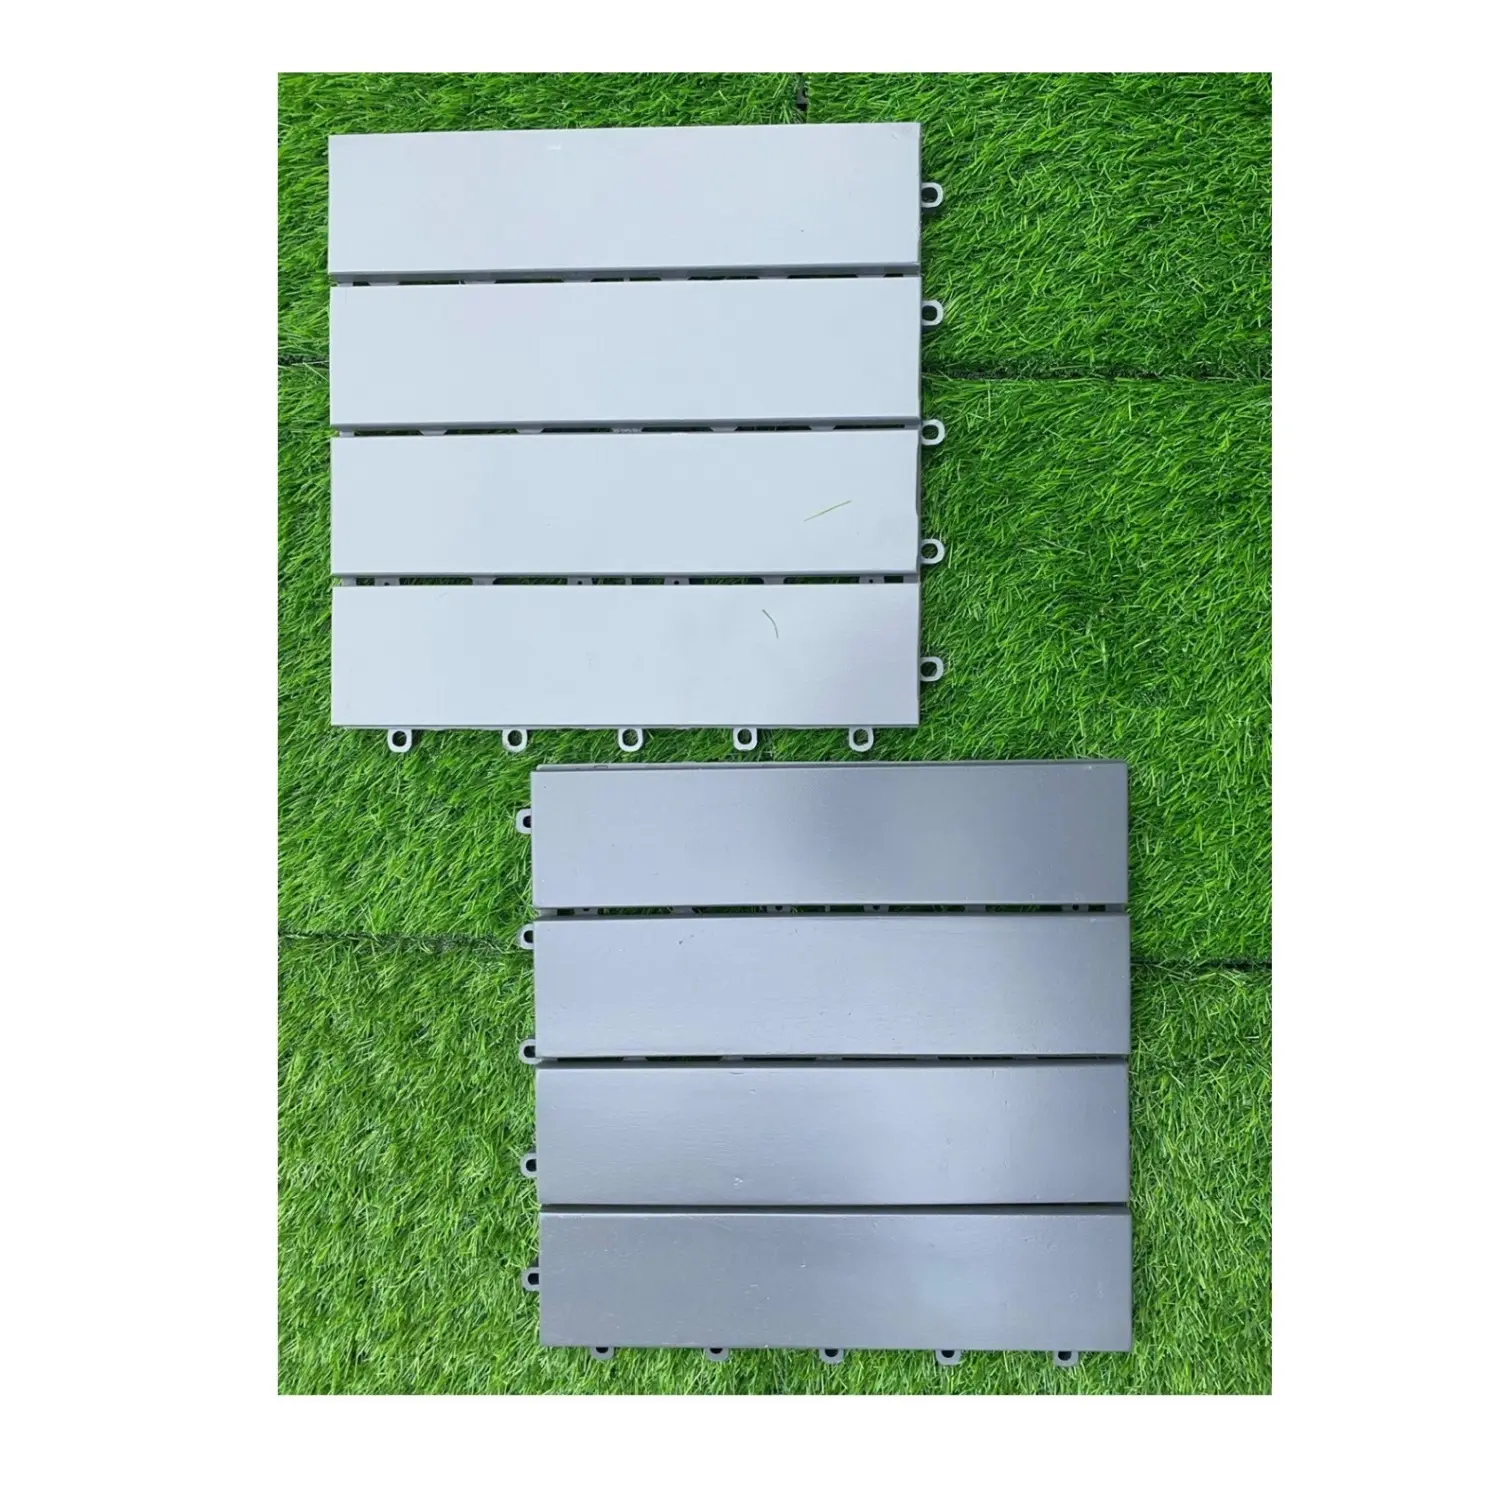 Grama quadrada de 30x30 cm para jardim doméstico, deck de grama quadrado de cores duplas, grama de alta densidade para paisagismo e gramado